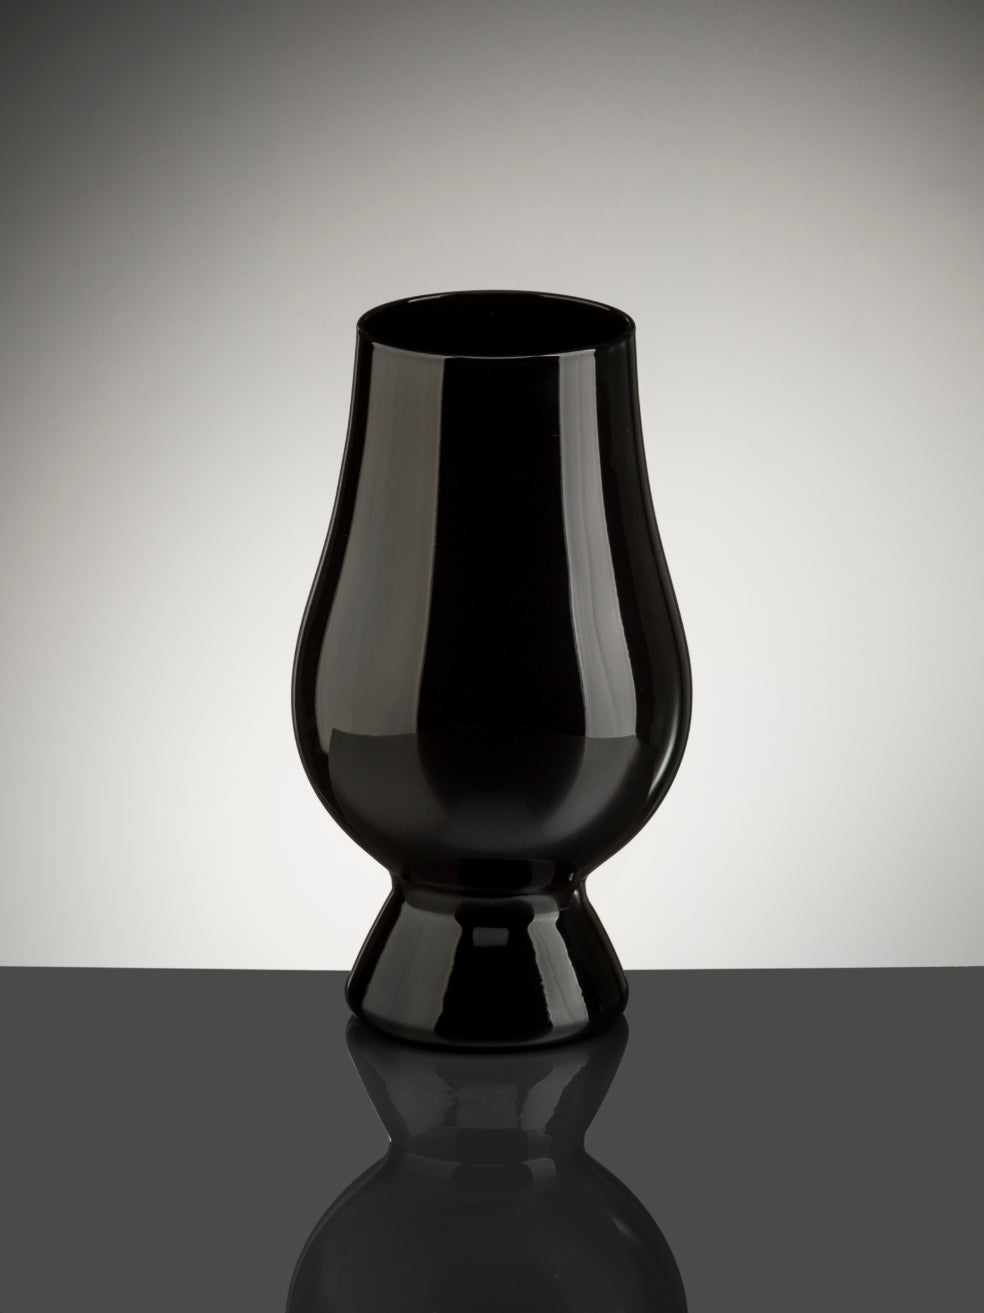 The Glencairn Whisky Glass in black.